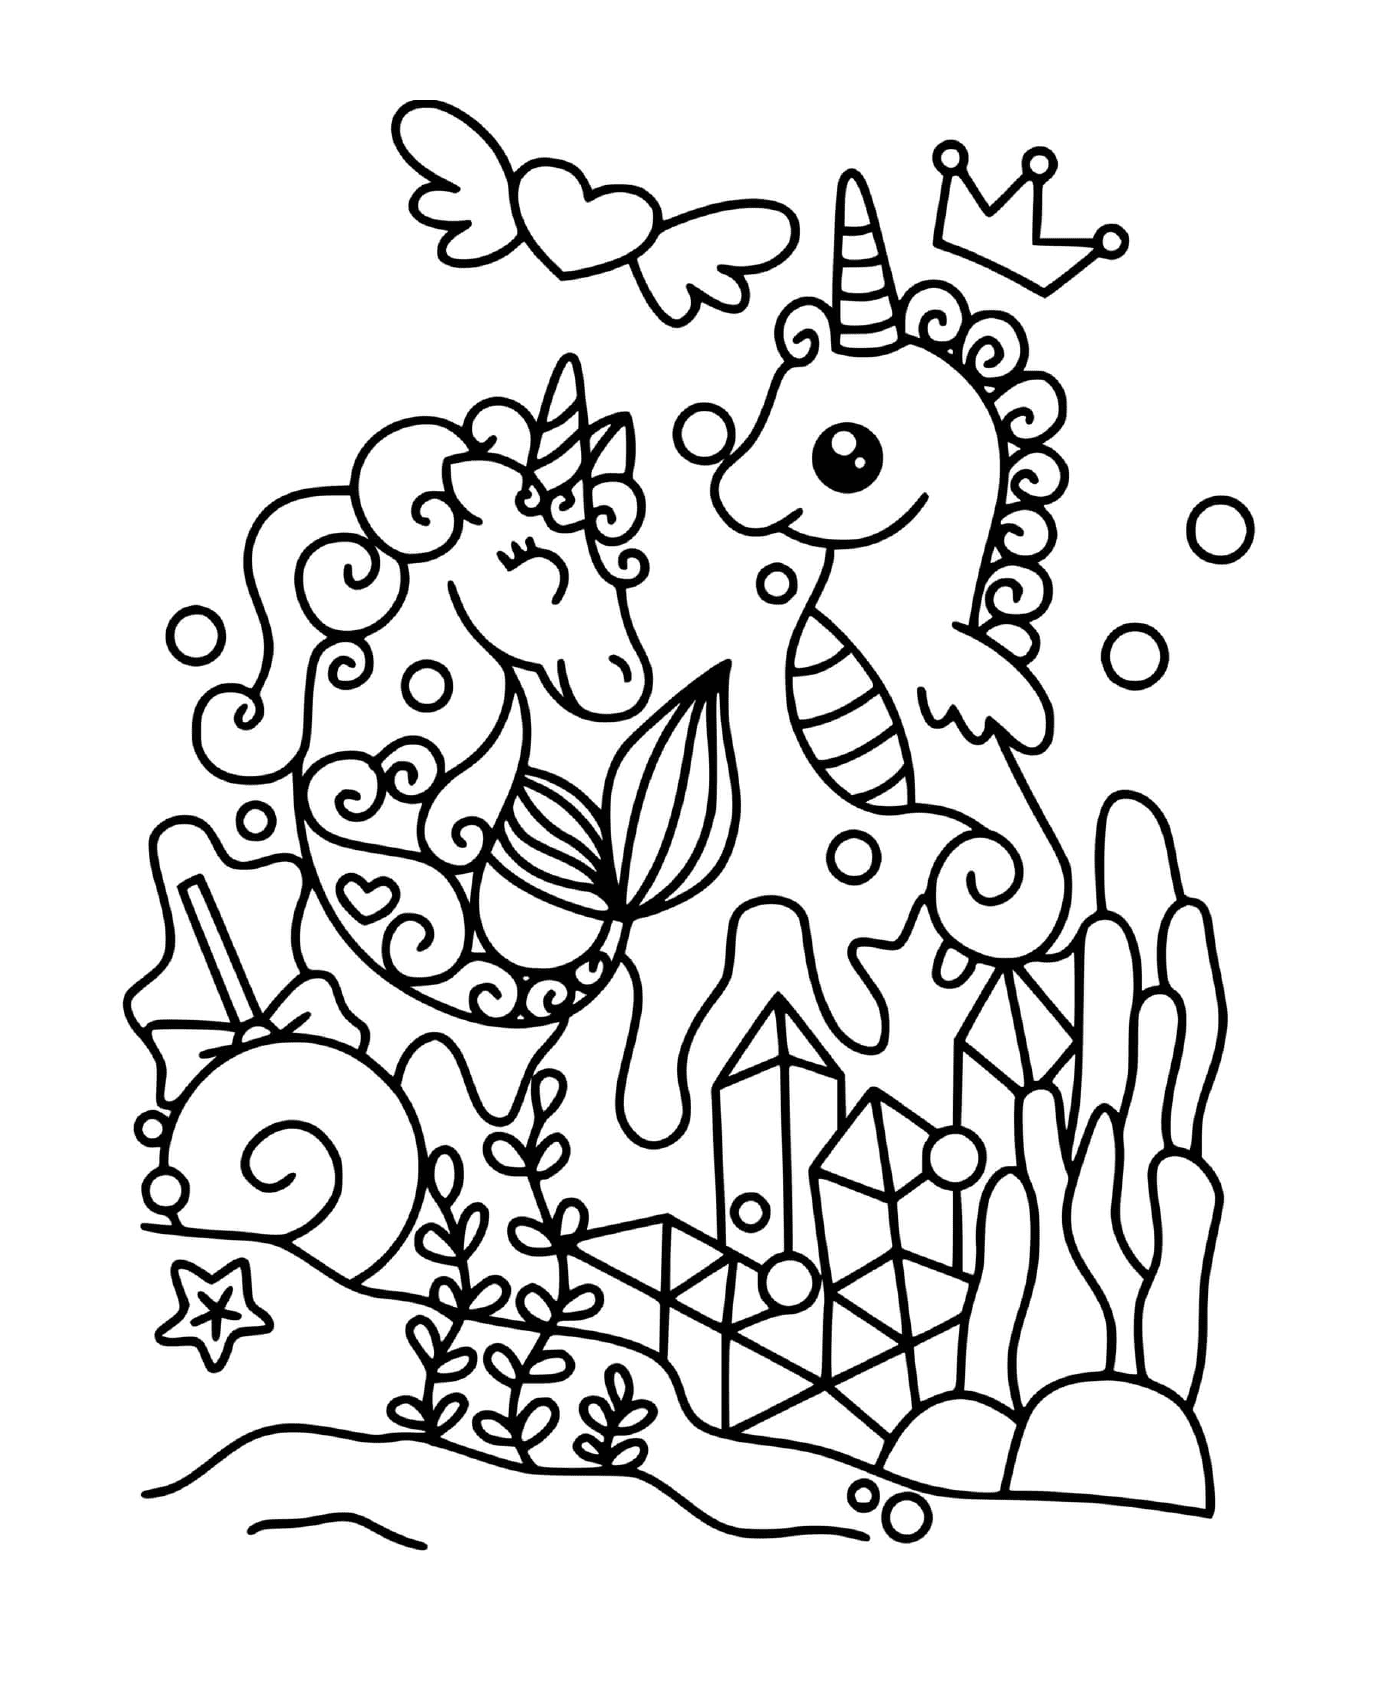  Unicornio y caballito de mar mágico 